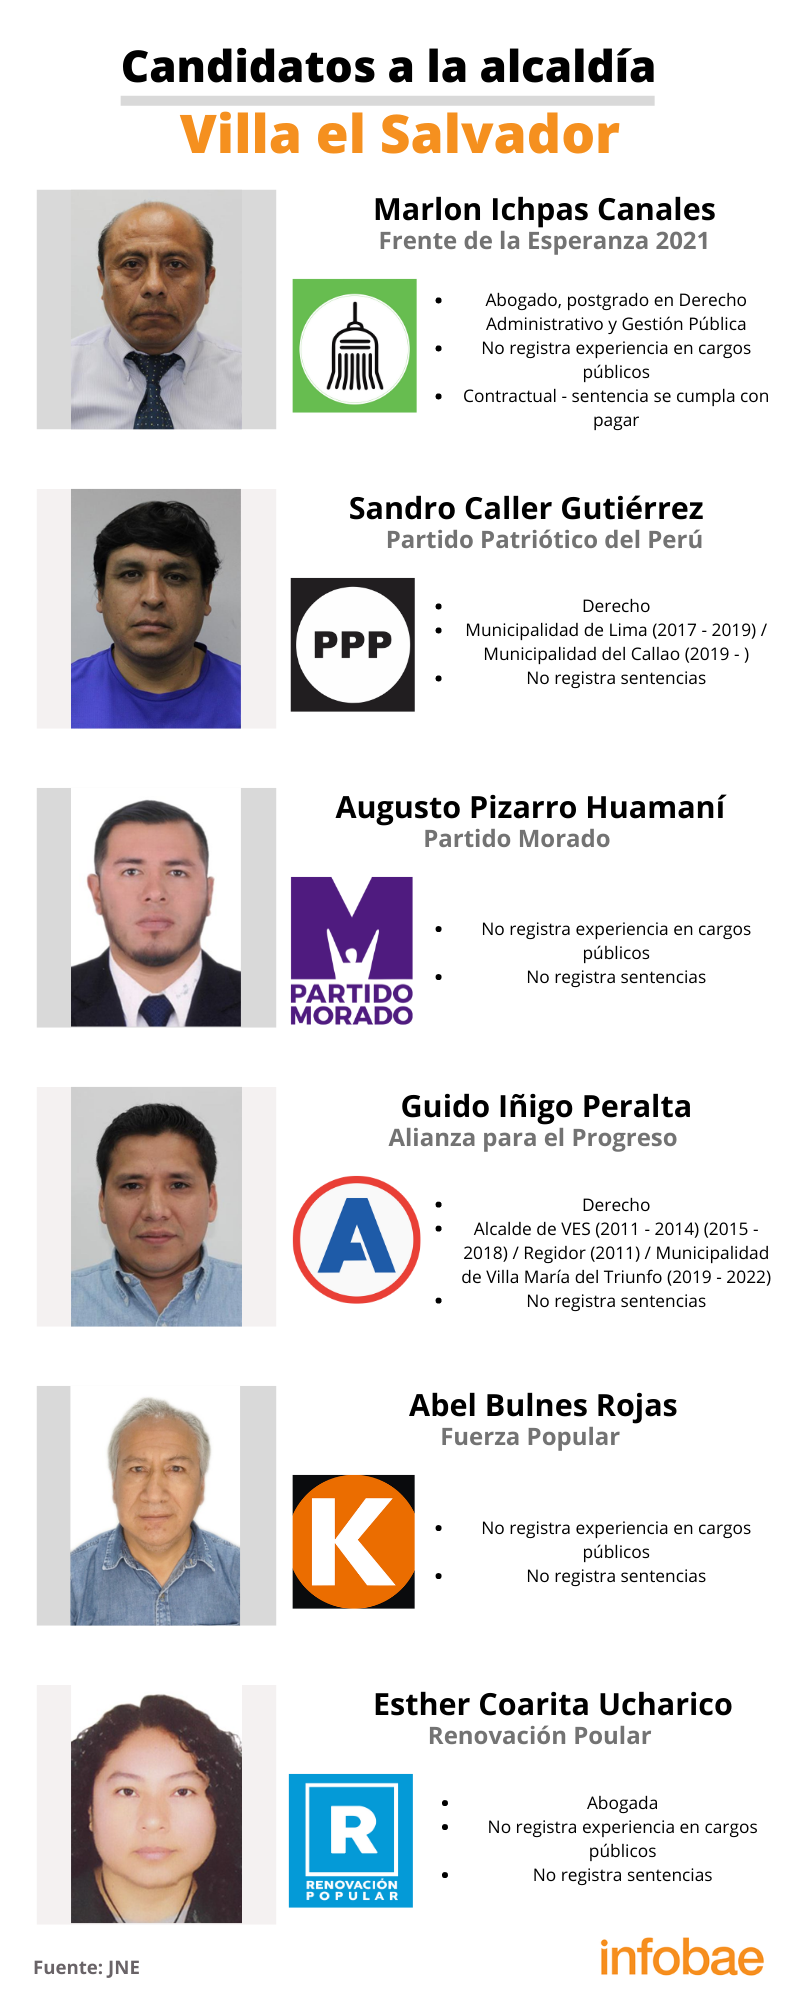 Candidatos a la alcaldía de Villa el Salvador